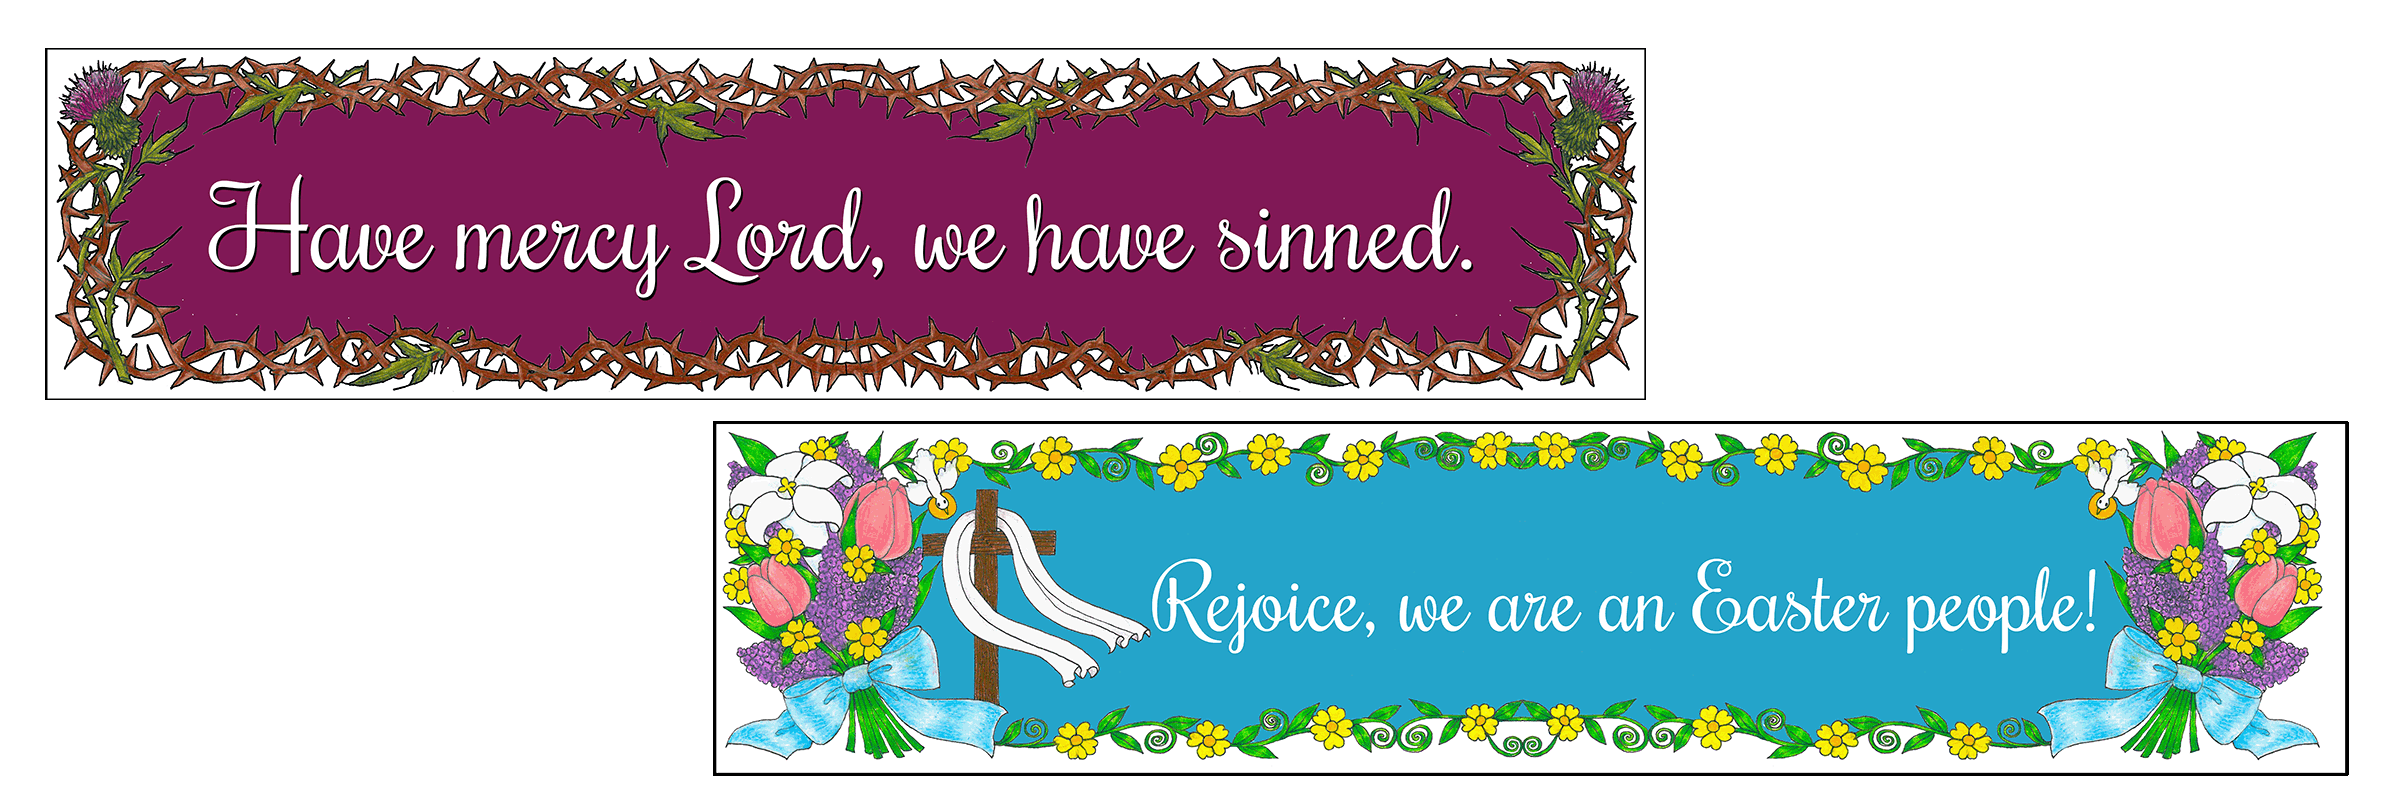 Reversible Lent/Easter Banner